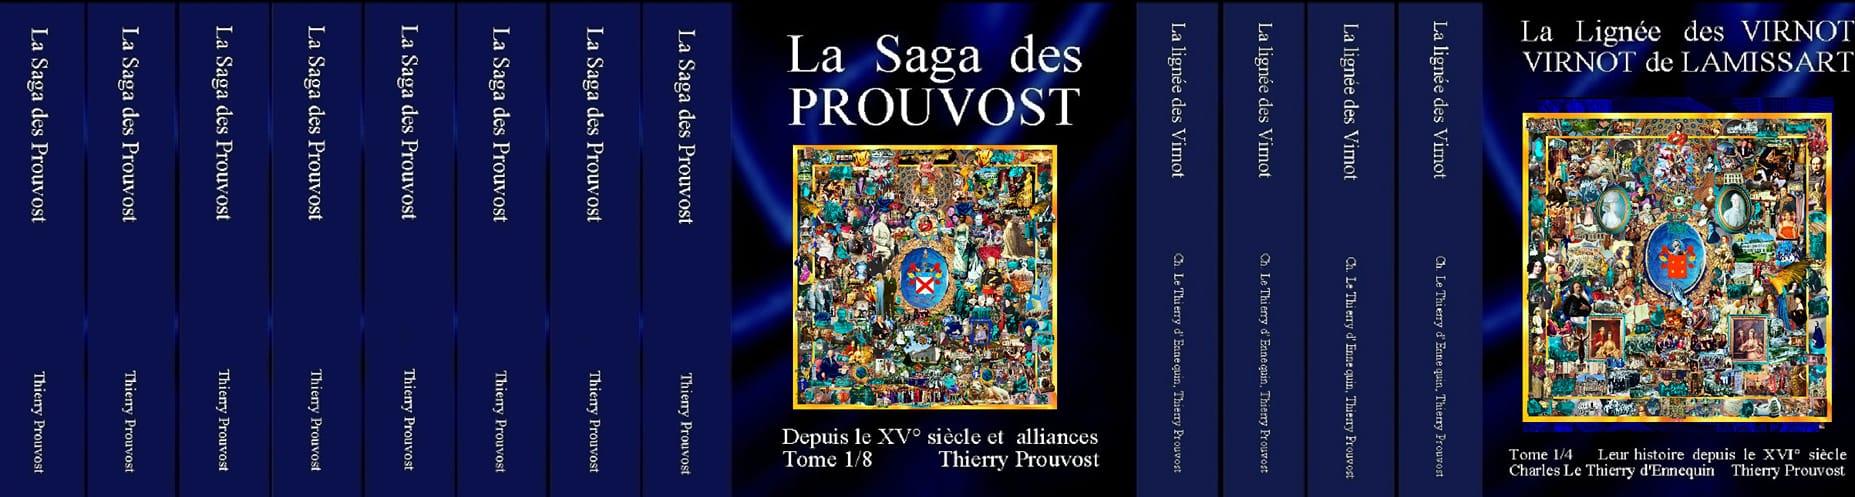 Prouvost-Virnot-12-tomes